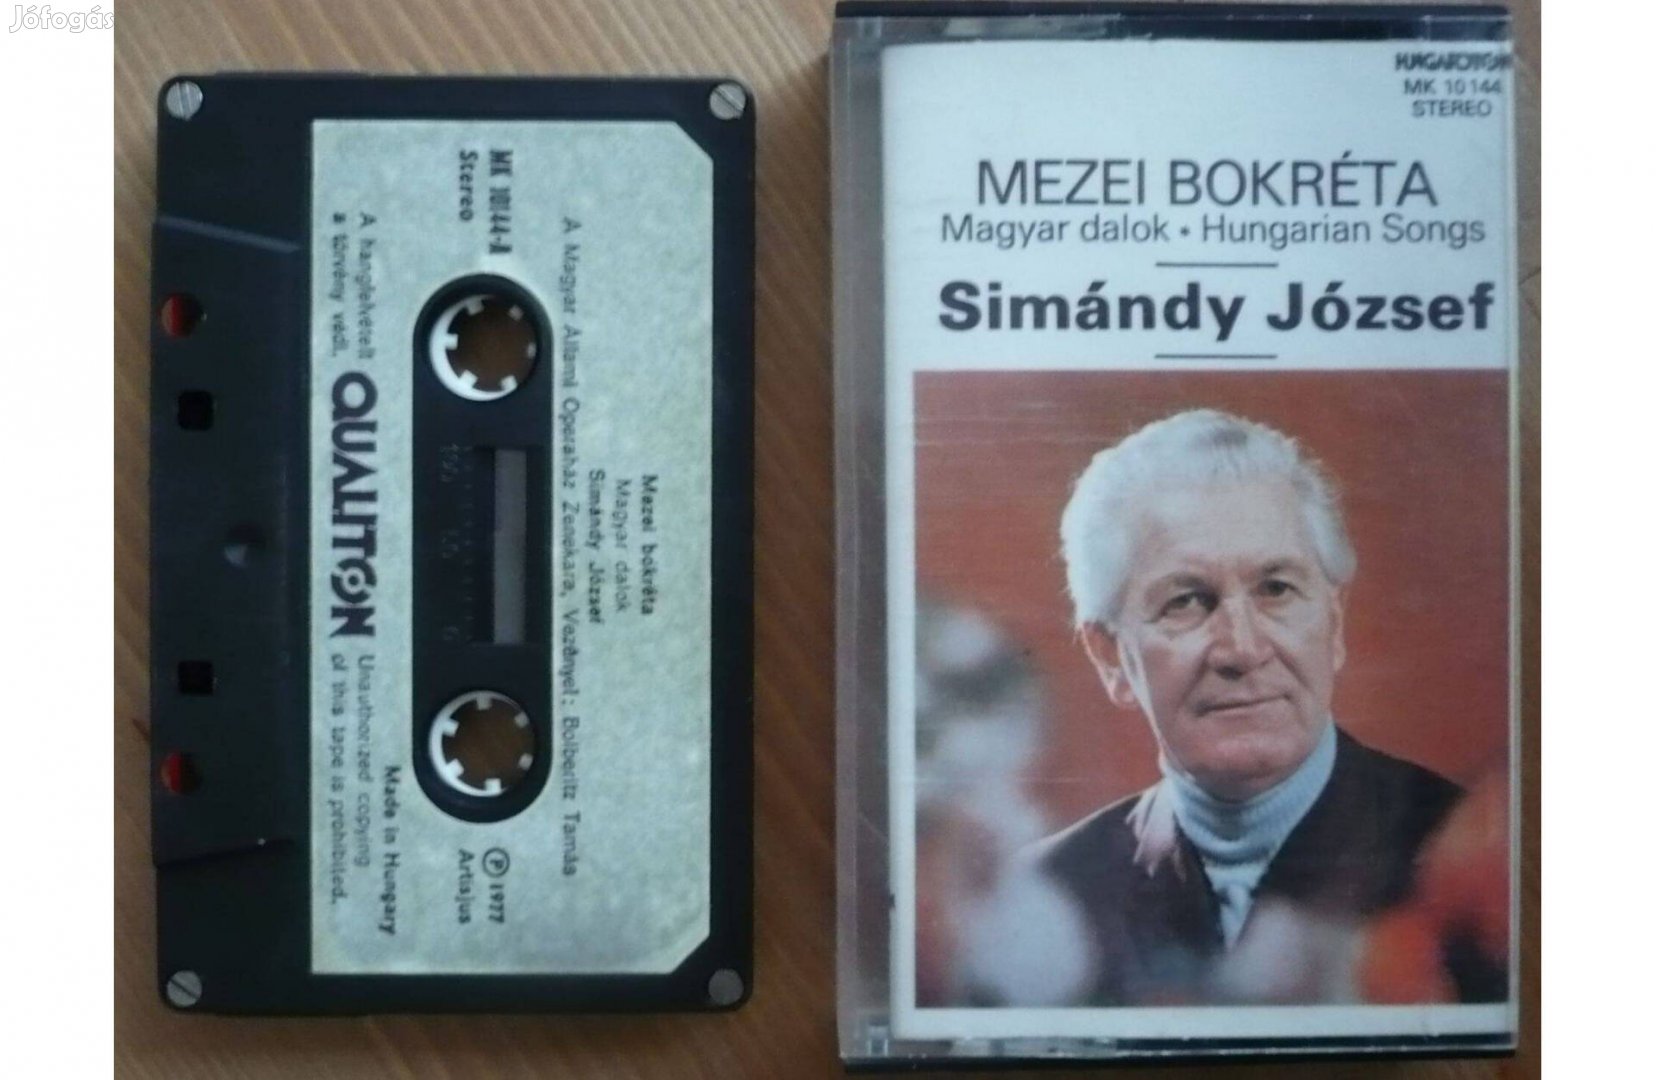 Simándy József - Mezei bokréta (magnókazetta)